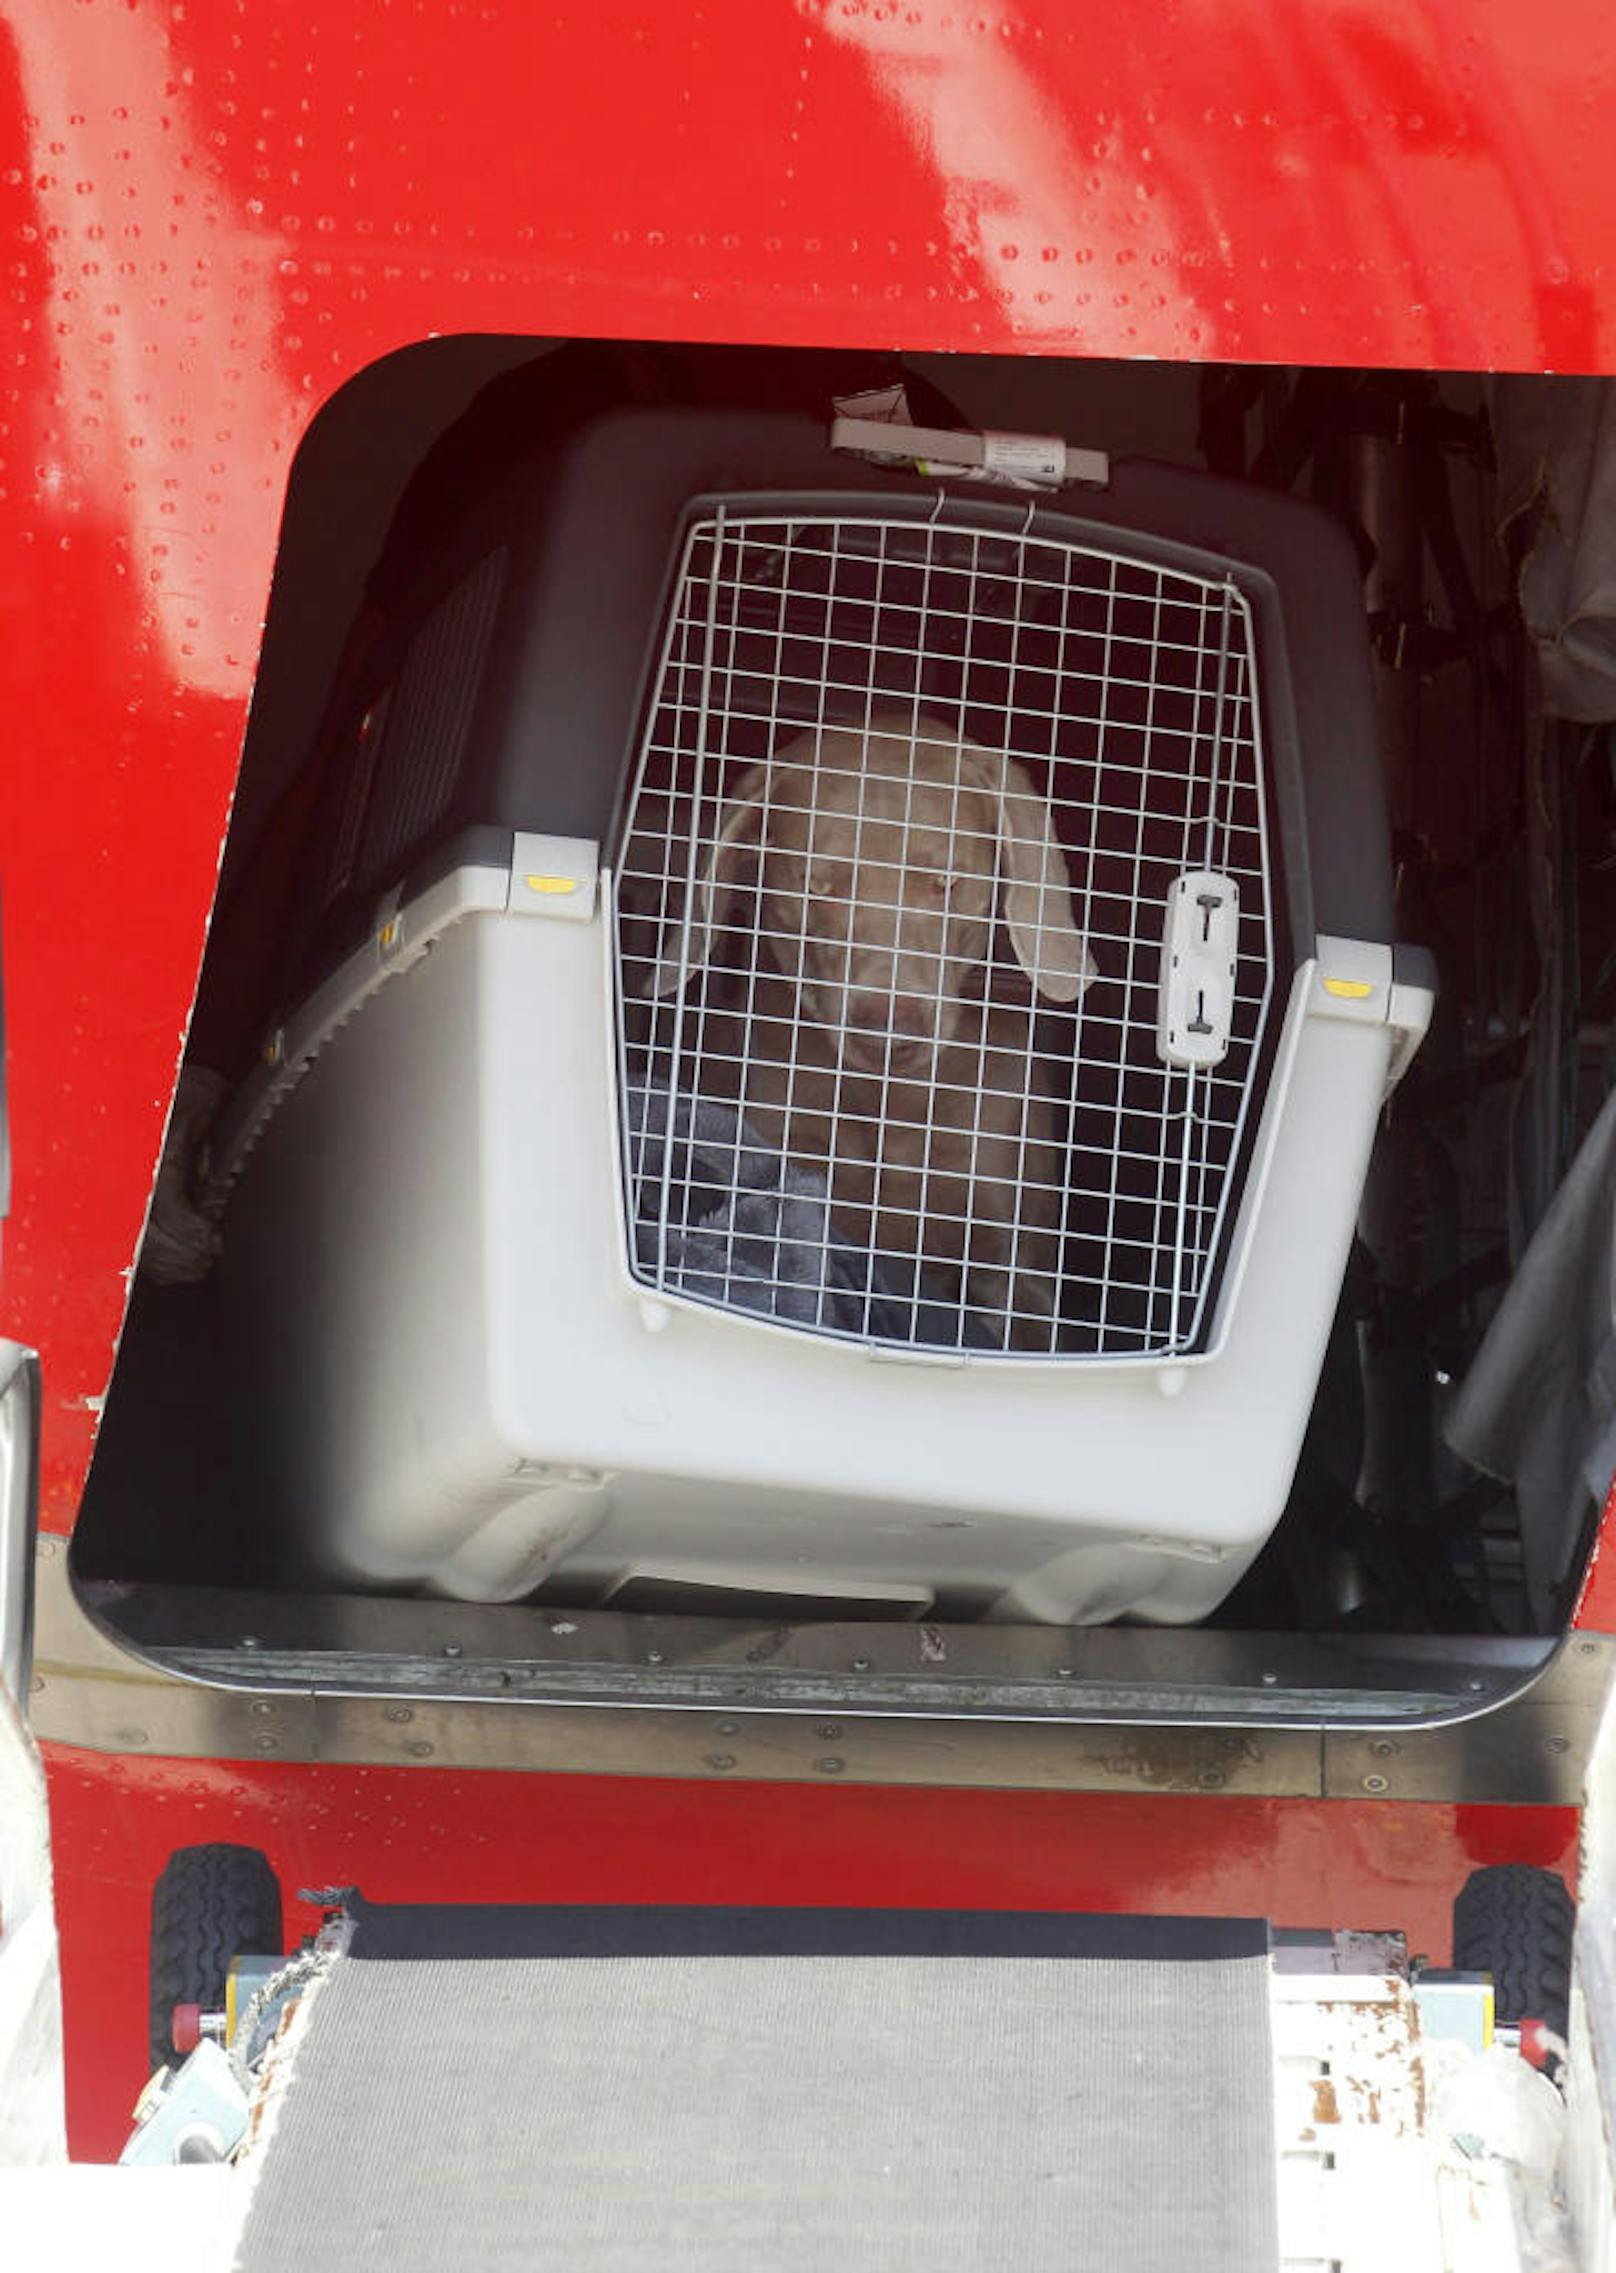 Am Freitag (16. März) musste United Airlines ein Flugzeug umleiten, damit ein falsch verladener Hund diesmal am richtigen Zielort ankam. Symbolfoto